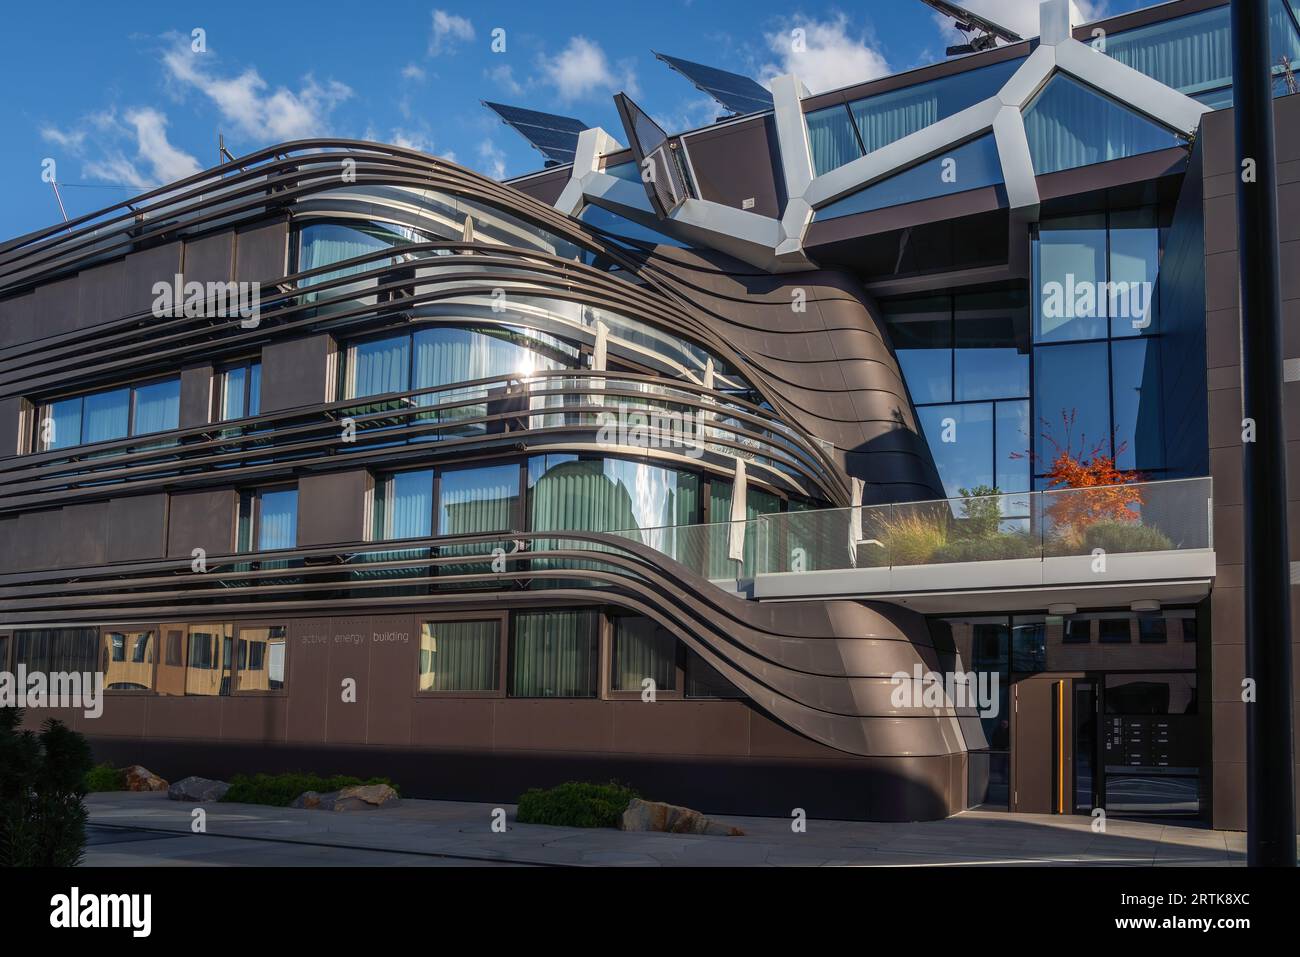 Bâtiment à énergie active - Architecture durable - Vaduz, Liechtenstein Banque D'Images